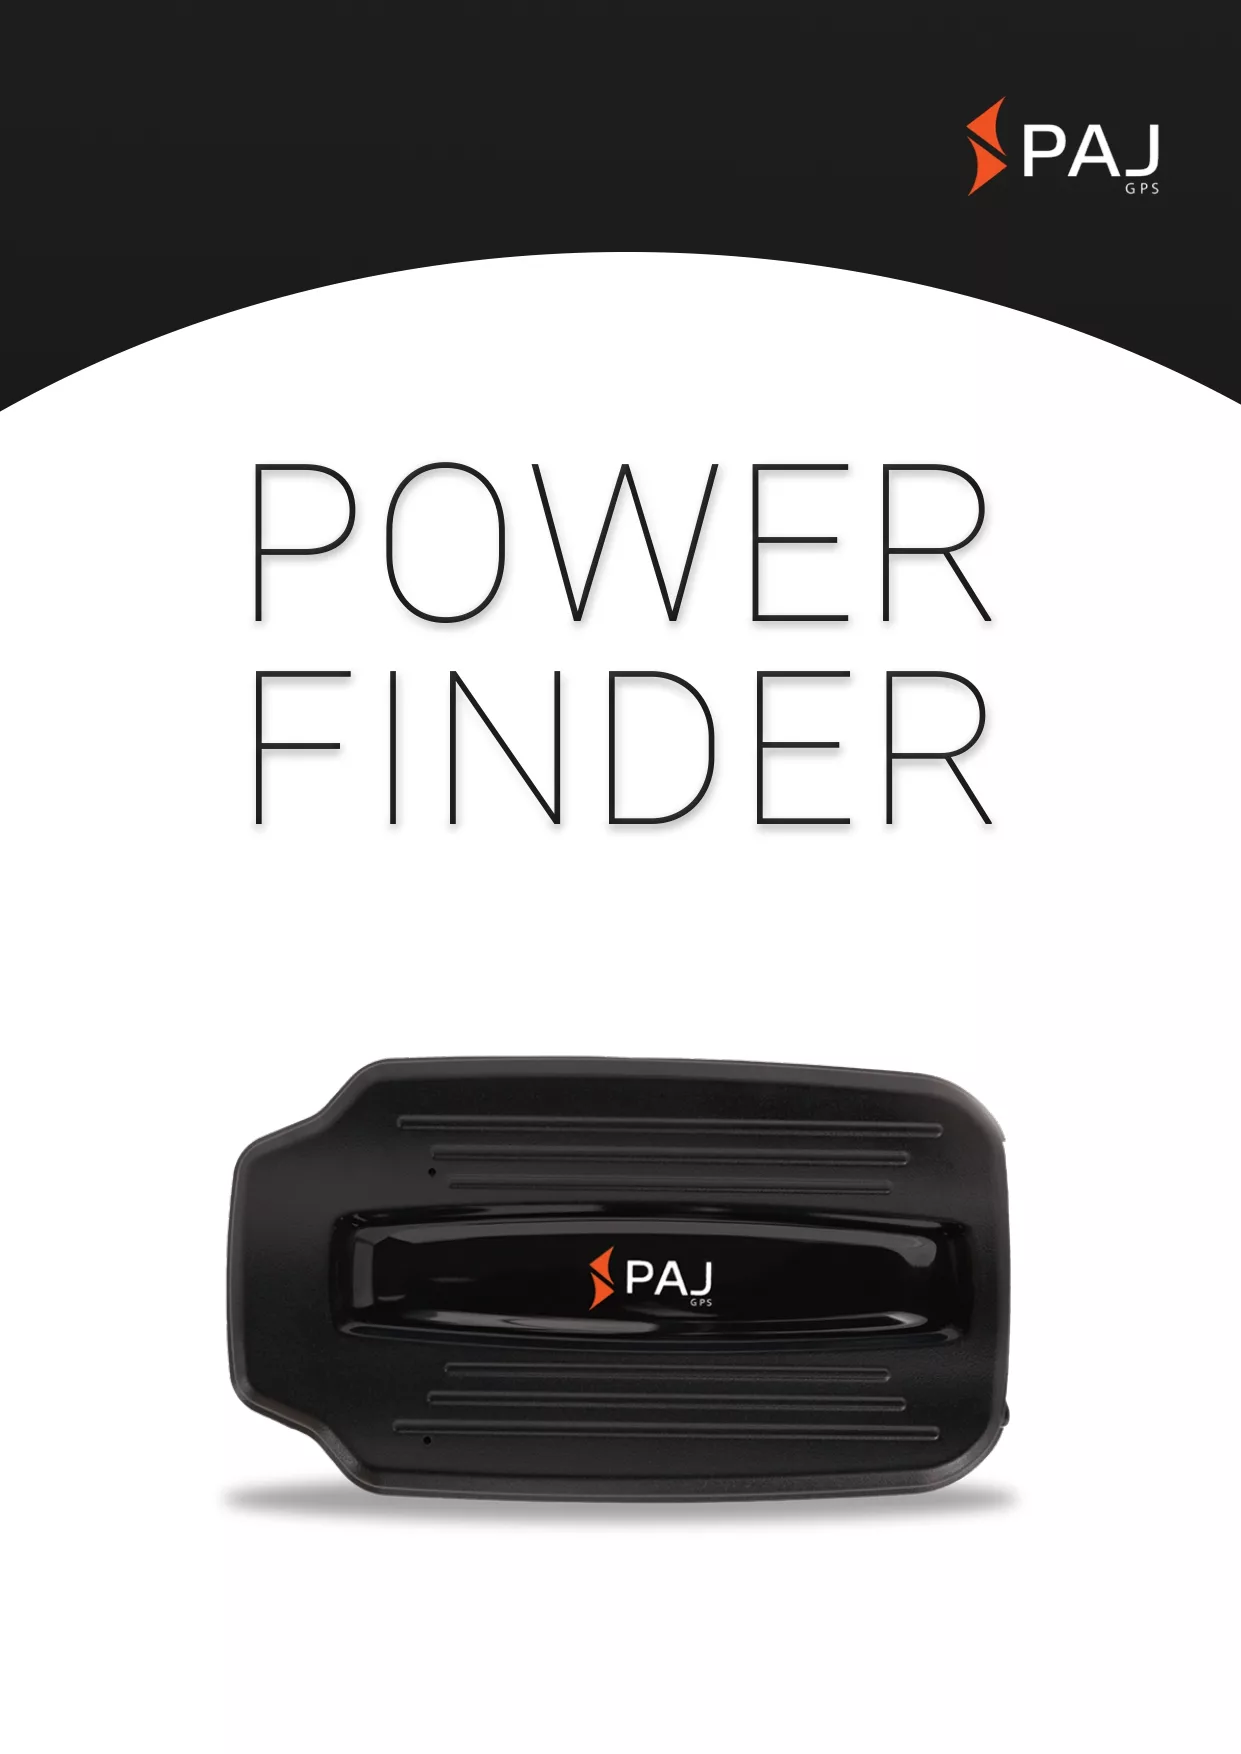 Immagine di copertina per scheda tecnica POWER Finder